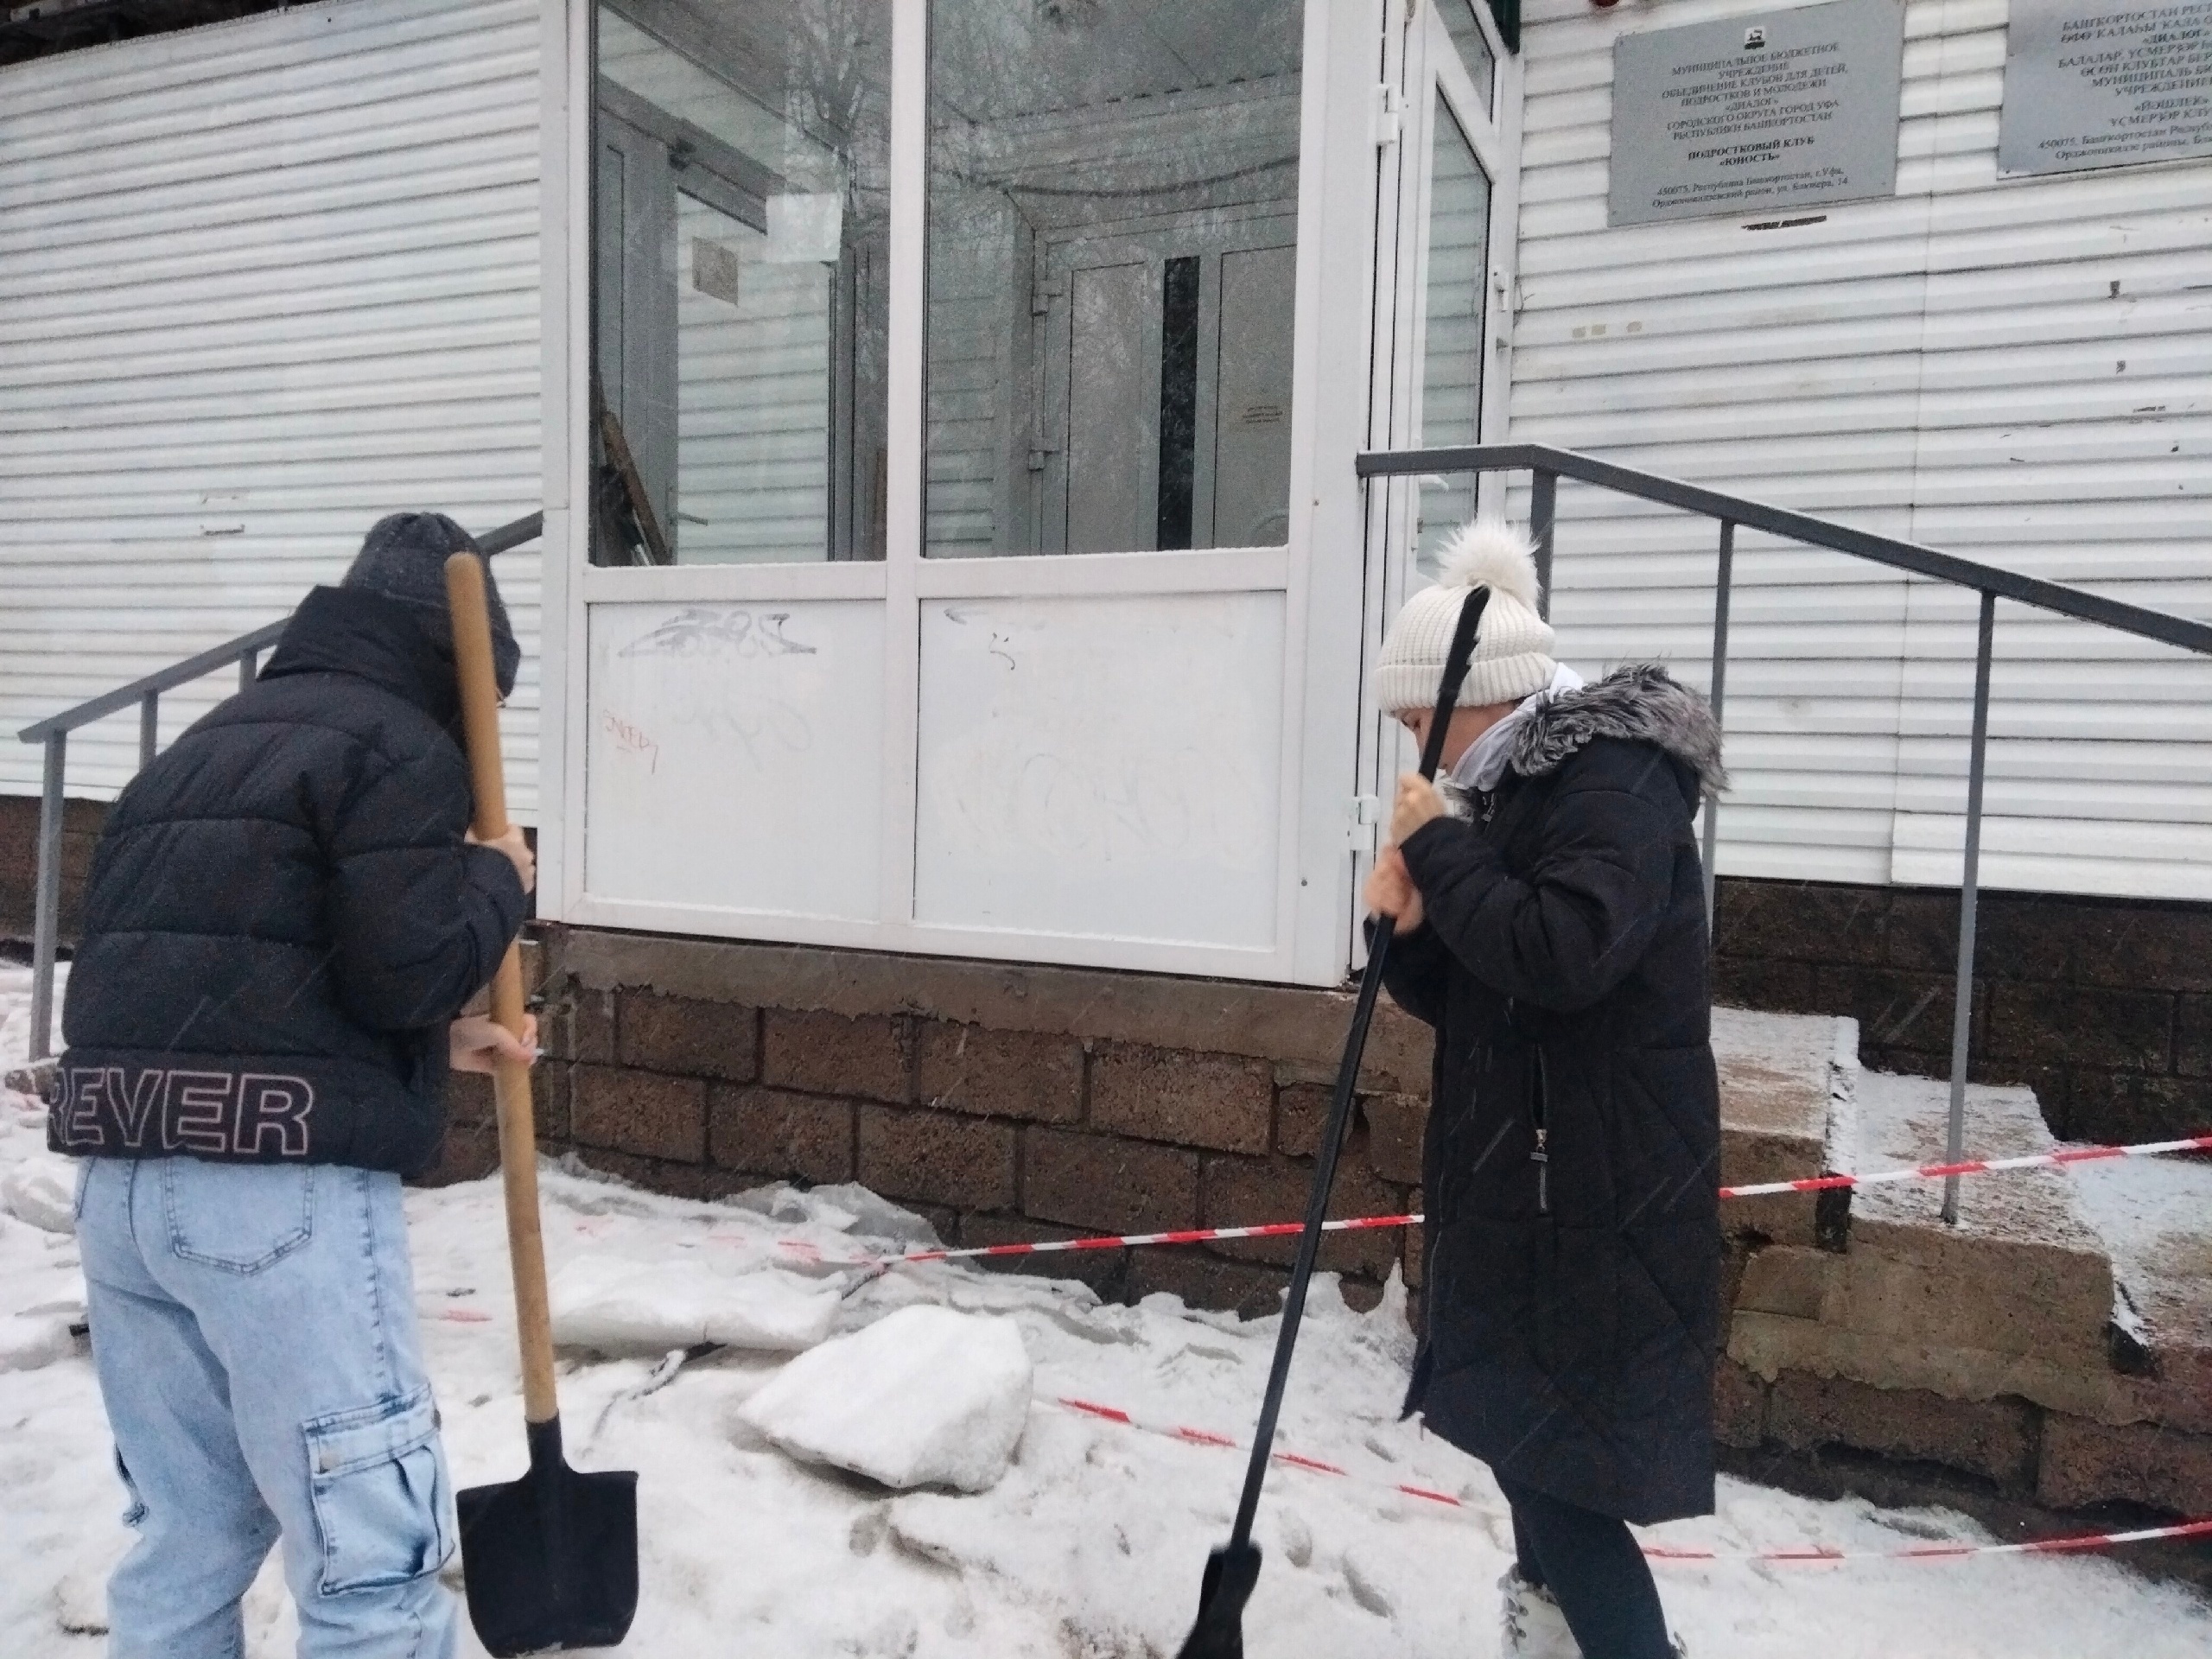 Волонтеры подросткового клуба "Юность" МБУ ОКДПМ "Диалог" принимают активное участие в очистке приклубной территории от снега и наледи